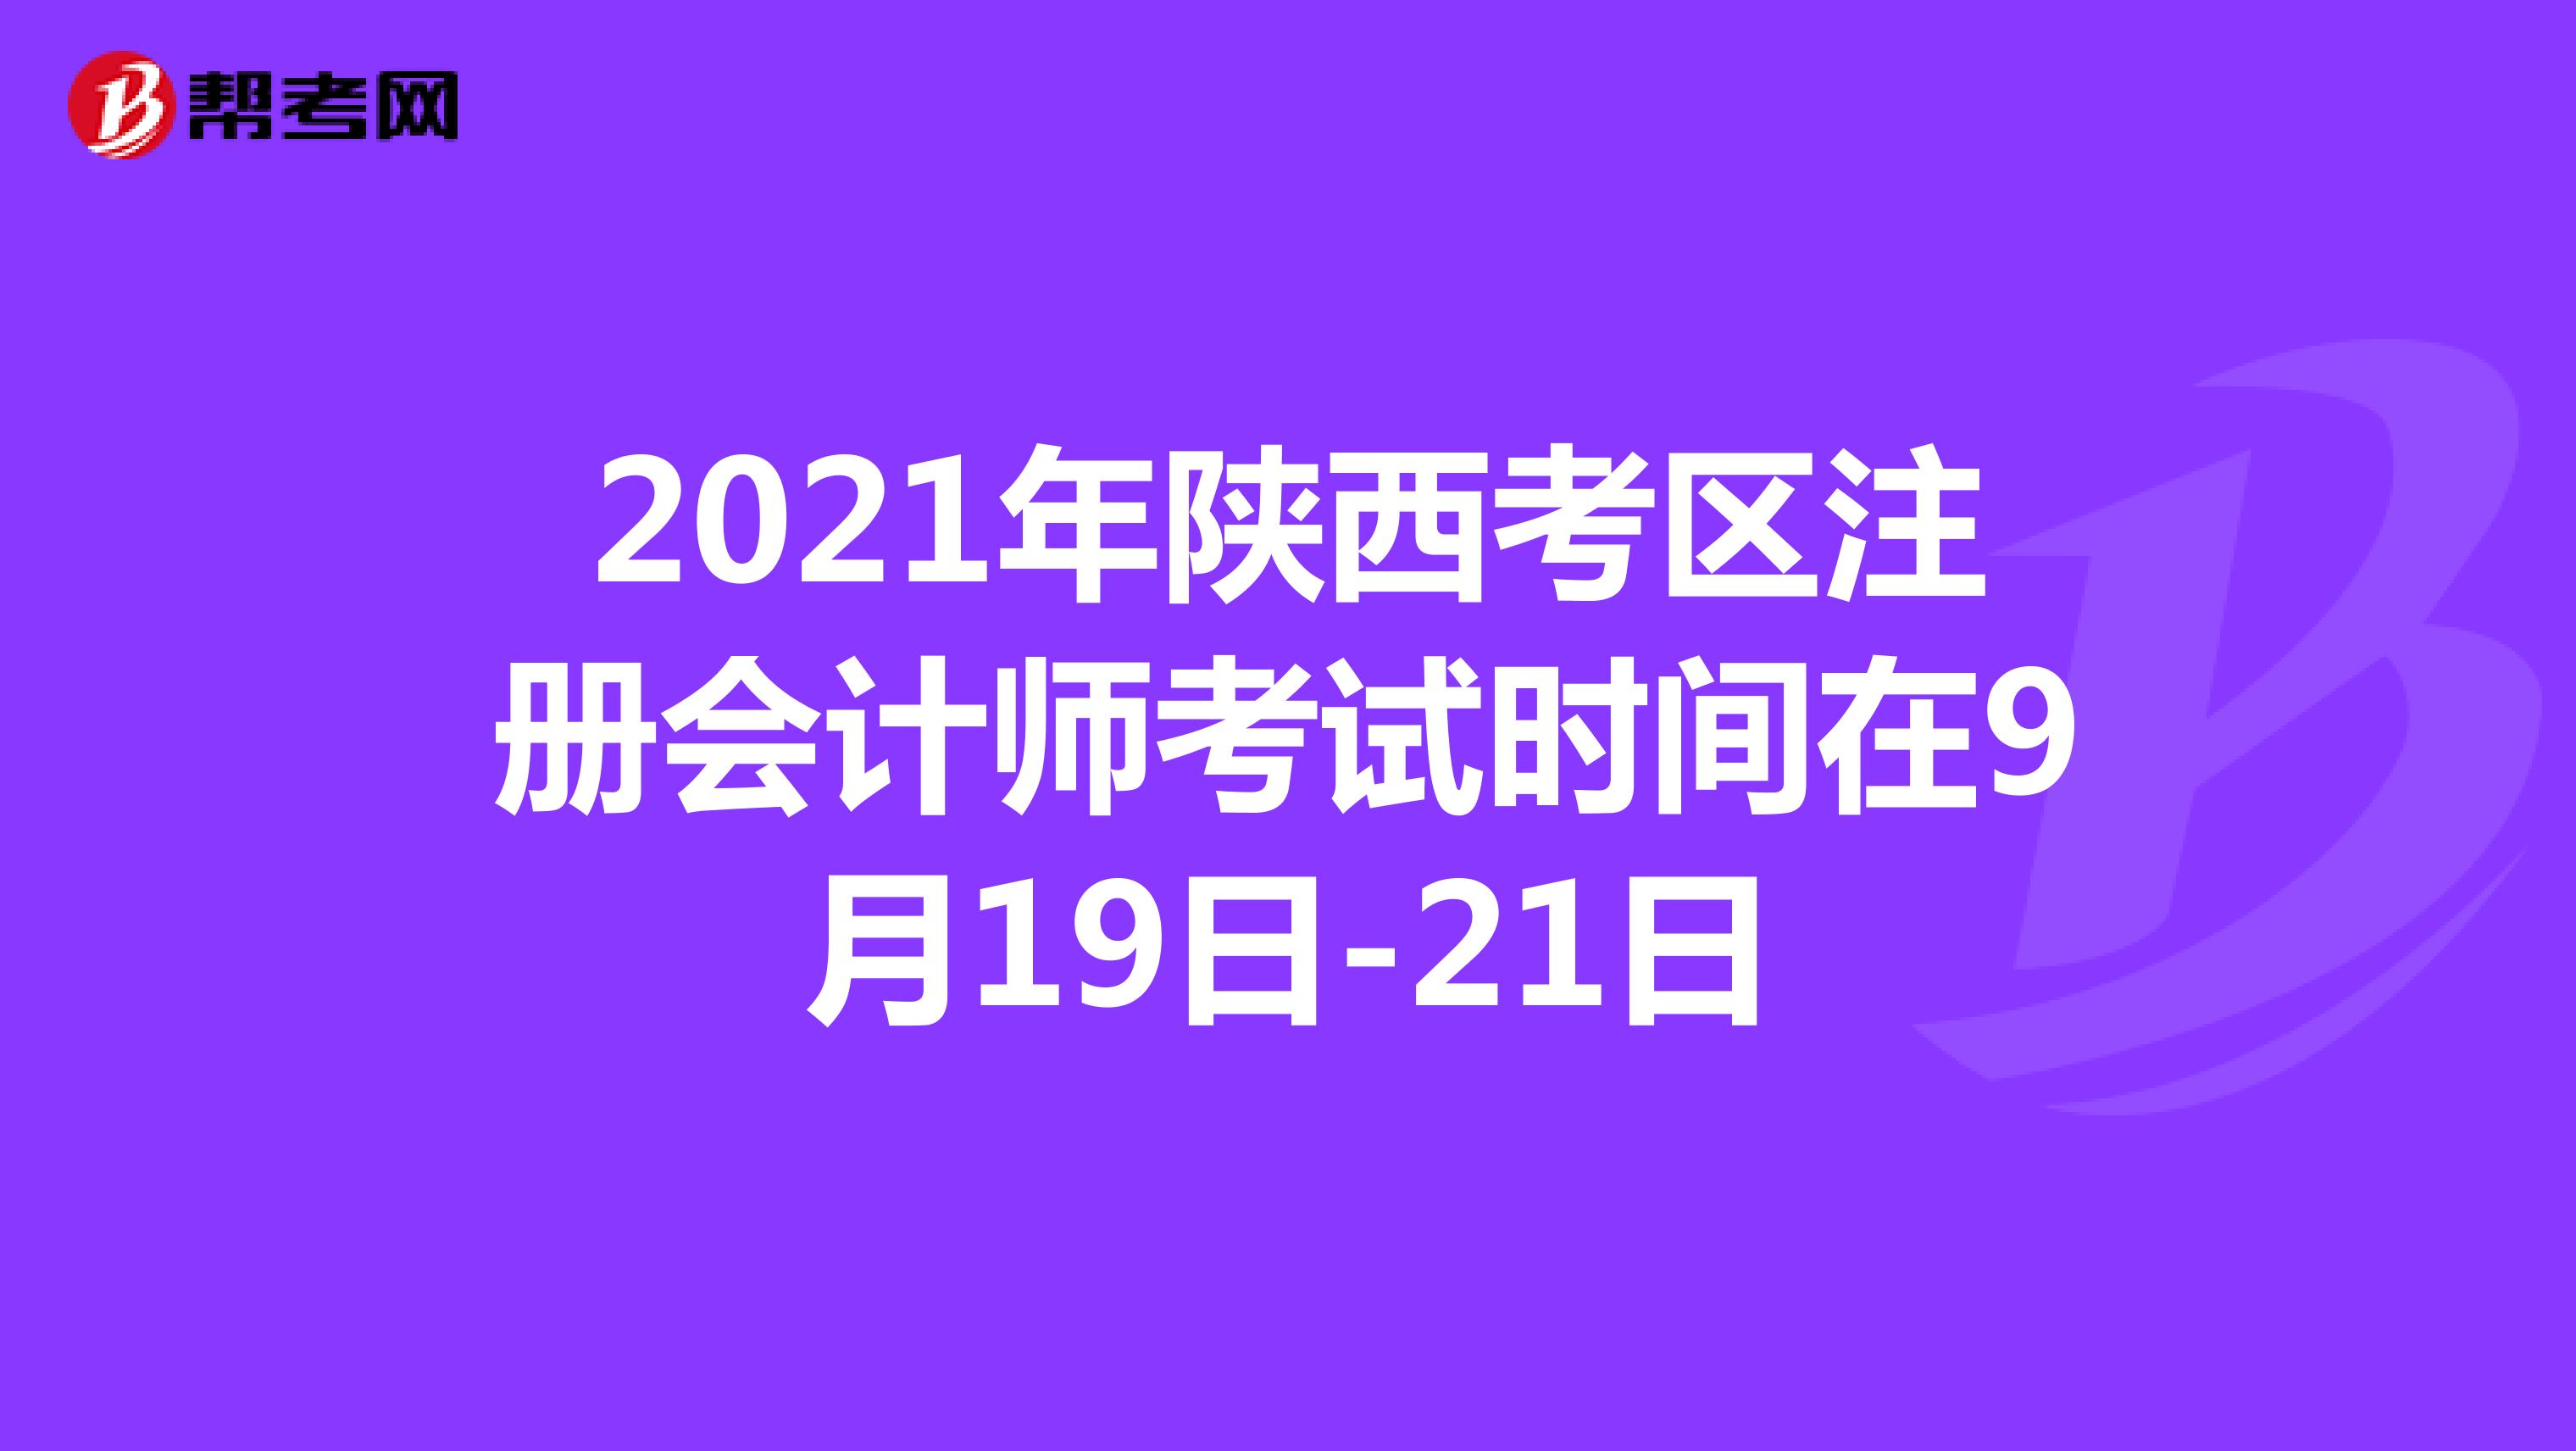 2021年陕西考区注册会计师考试时间在9月19日-21日